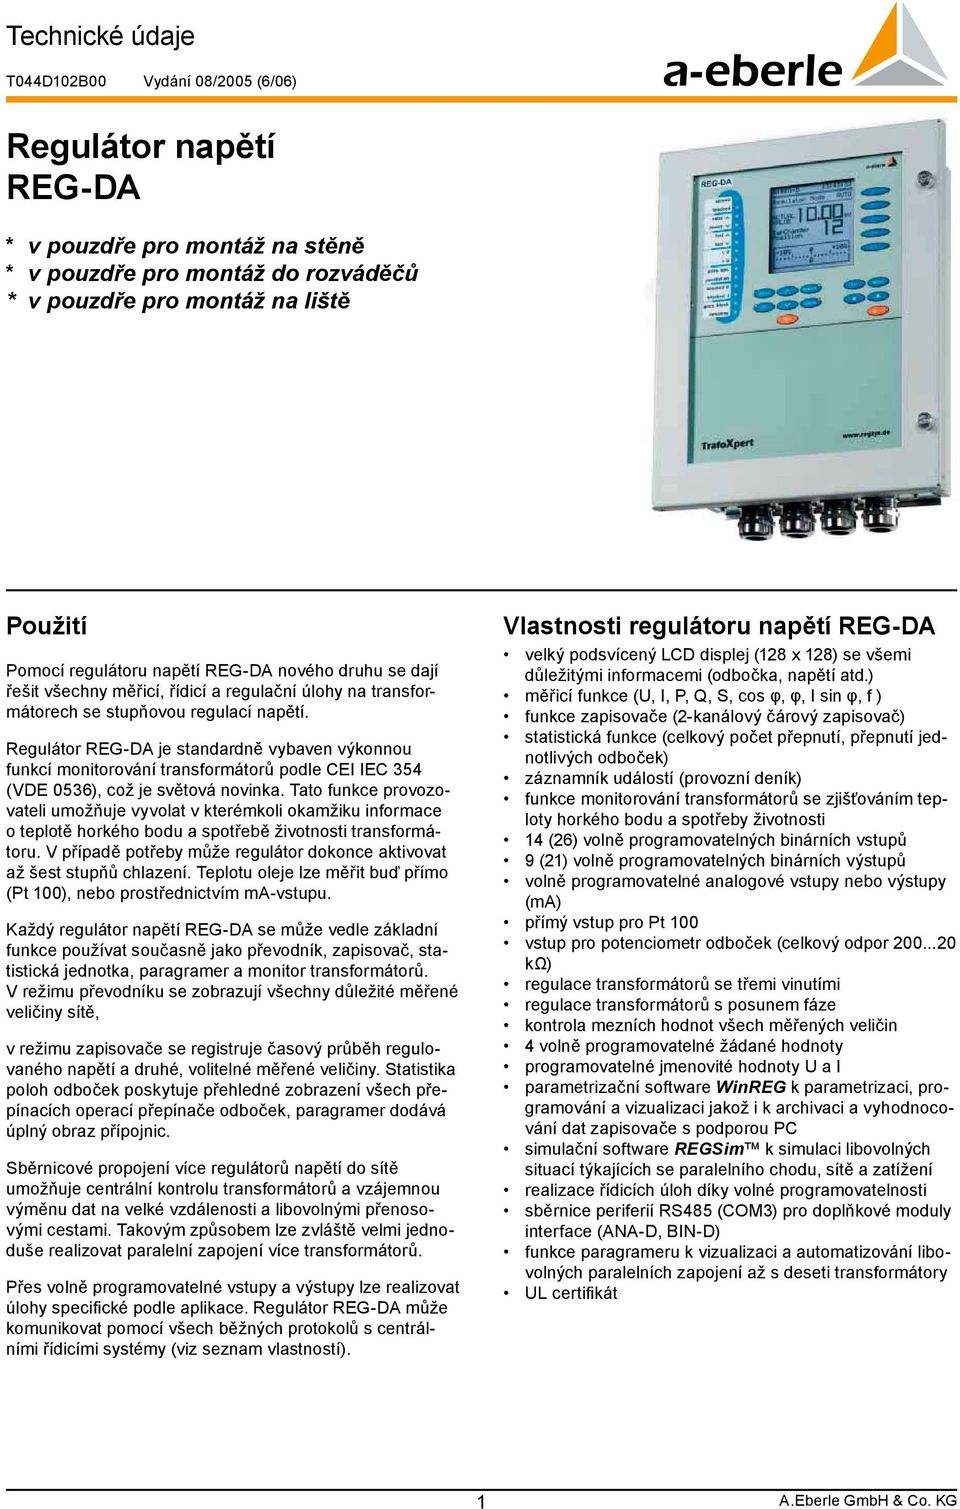 Regulátor je standardně vybaven výkonnou funkcí monitorování transformátorů podle CEI IEC 354 (VDE 0536), což je světová novinka.